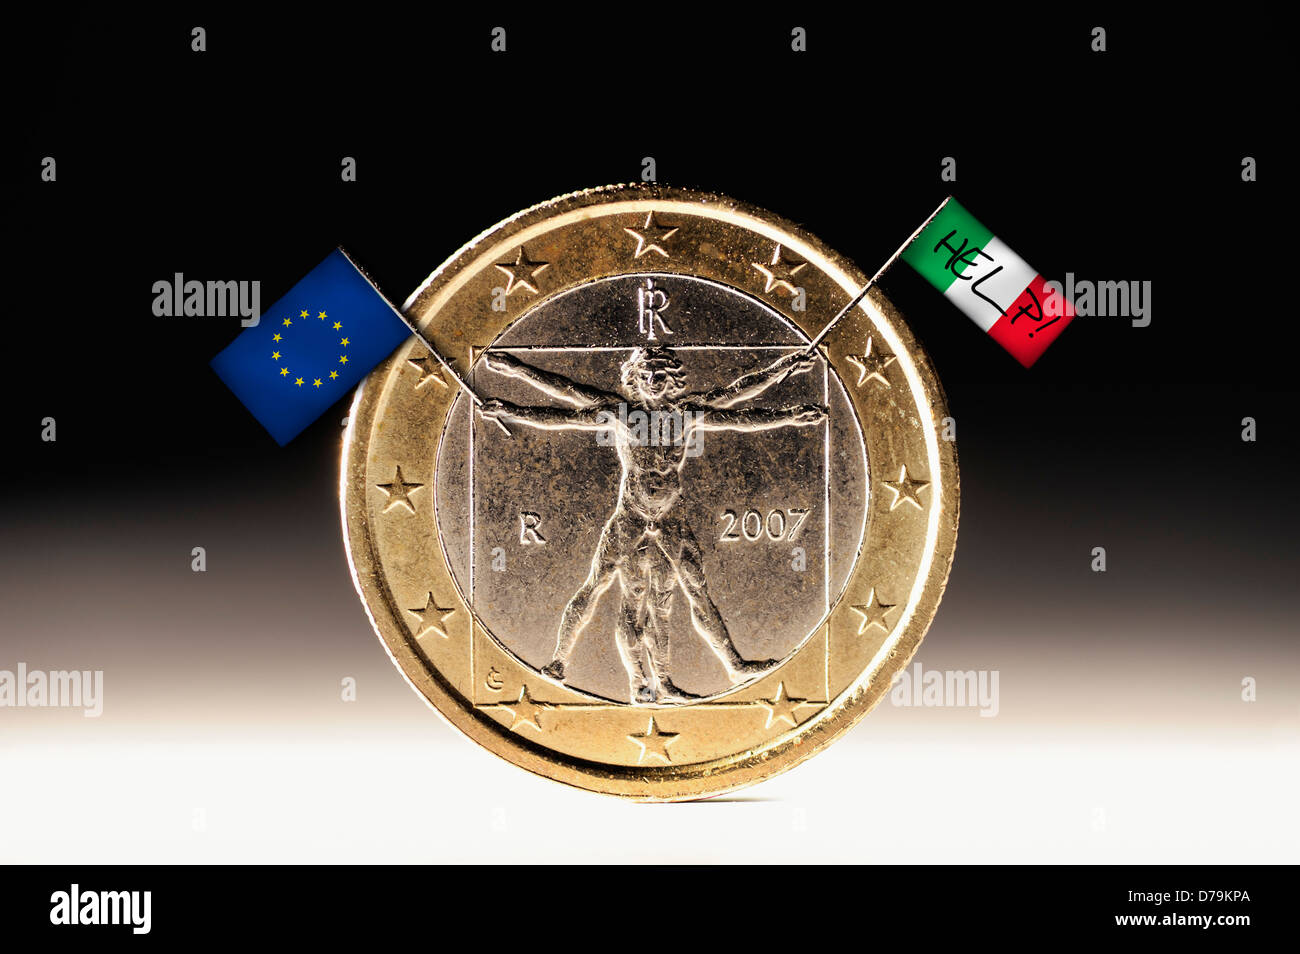 Una moneda de euro-italiana con la UE y el pabellón de Italia, la crisis de la deuda , Italienische Ein-Euro-Münze mit EU- und Italienfahne, Schuldenkrise Foto de stock